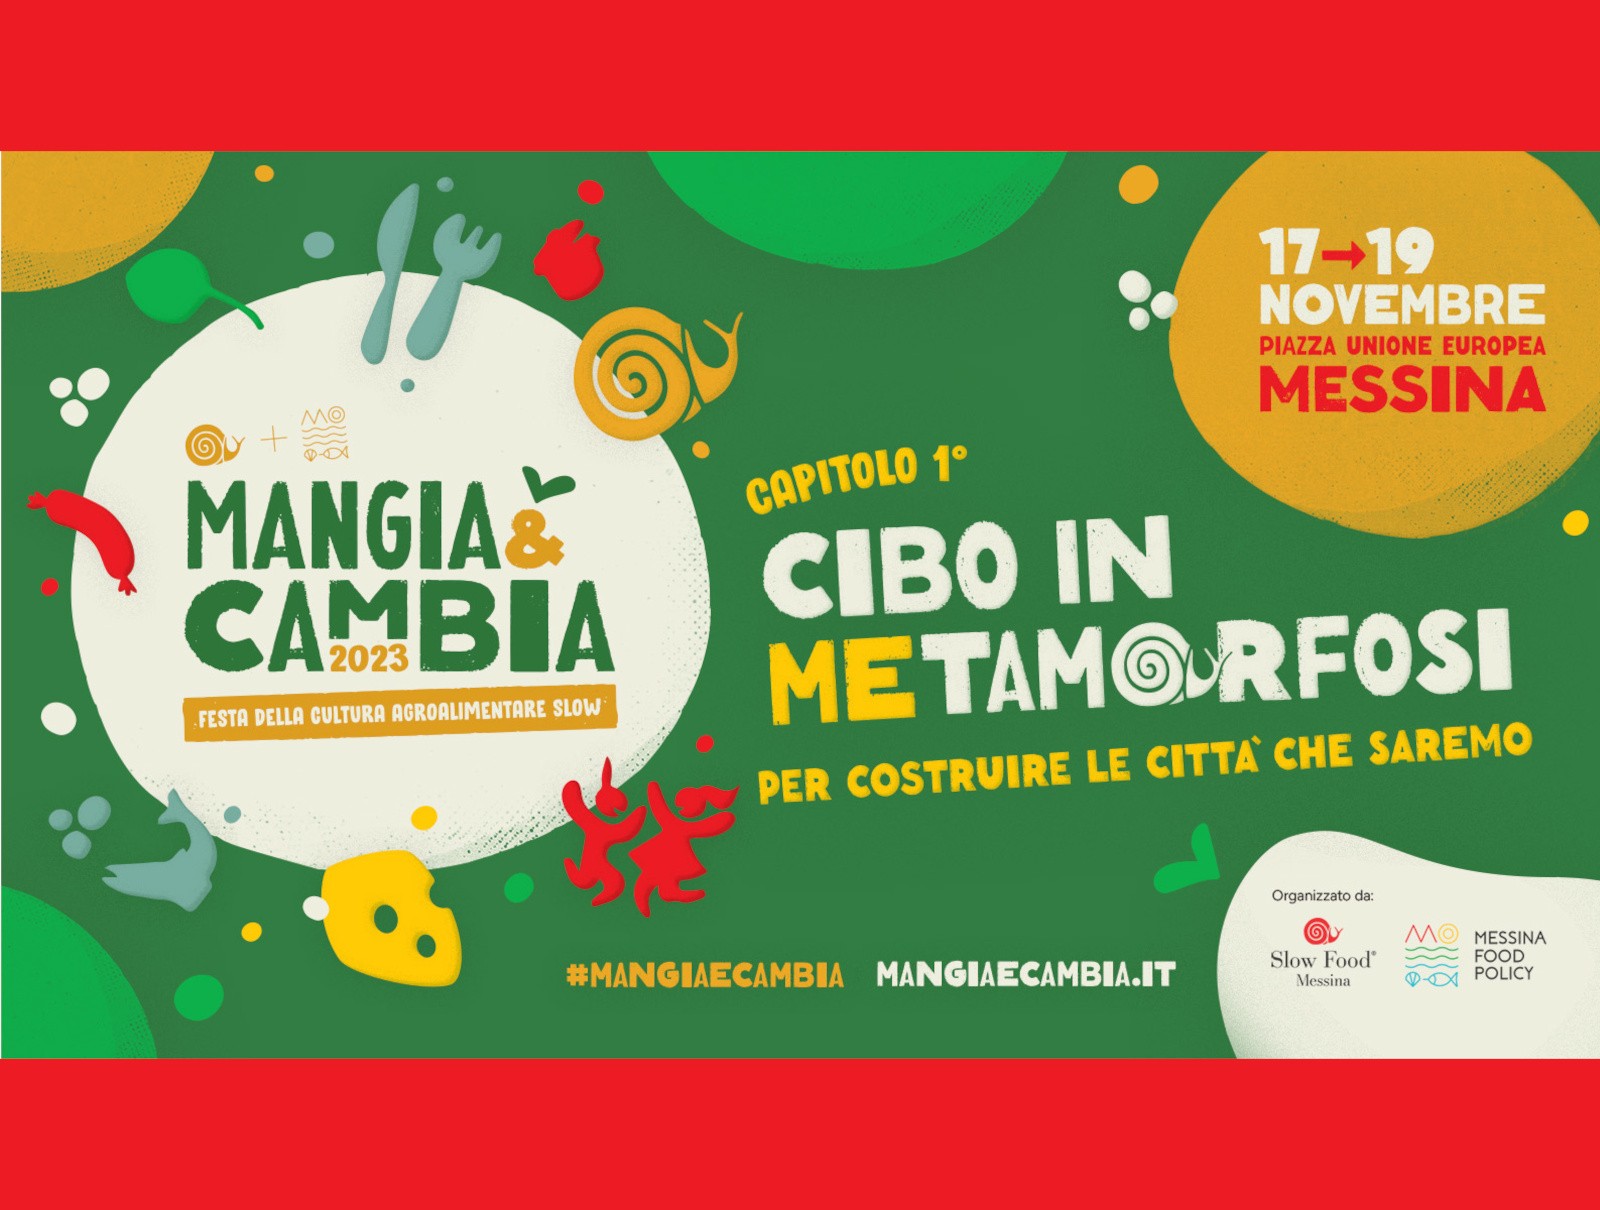 Sta per arrivare "Mangia & Cambia", la festa della cultura agroalimentare slow a Messina